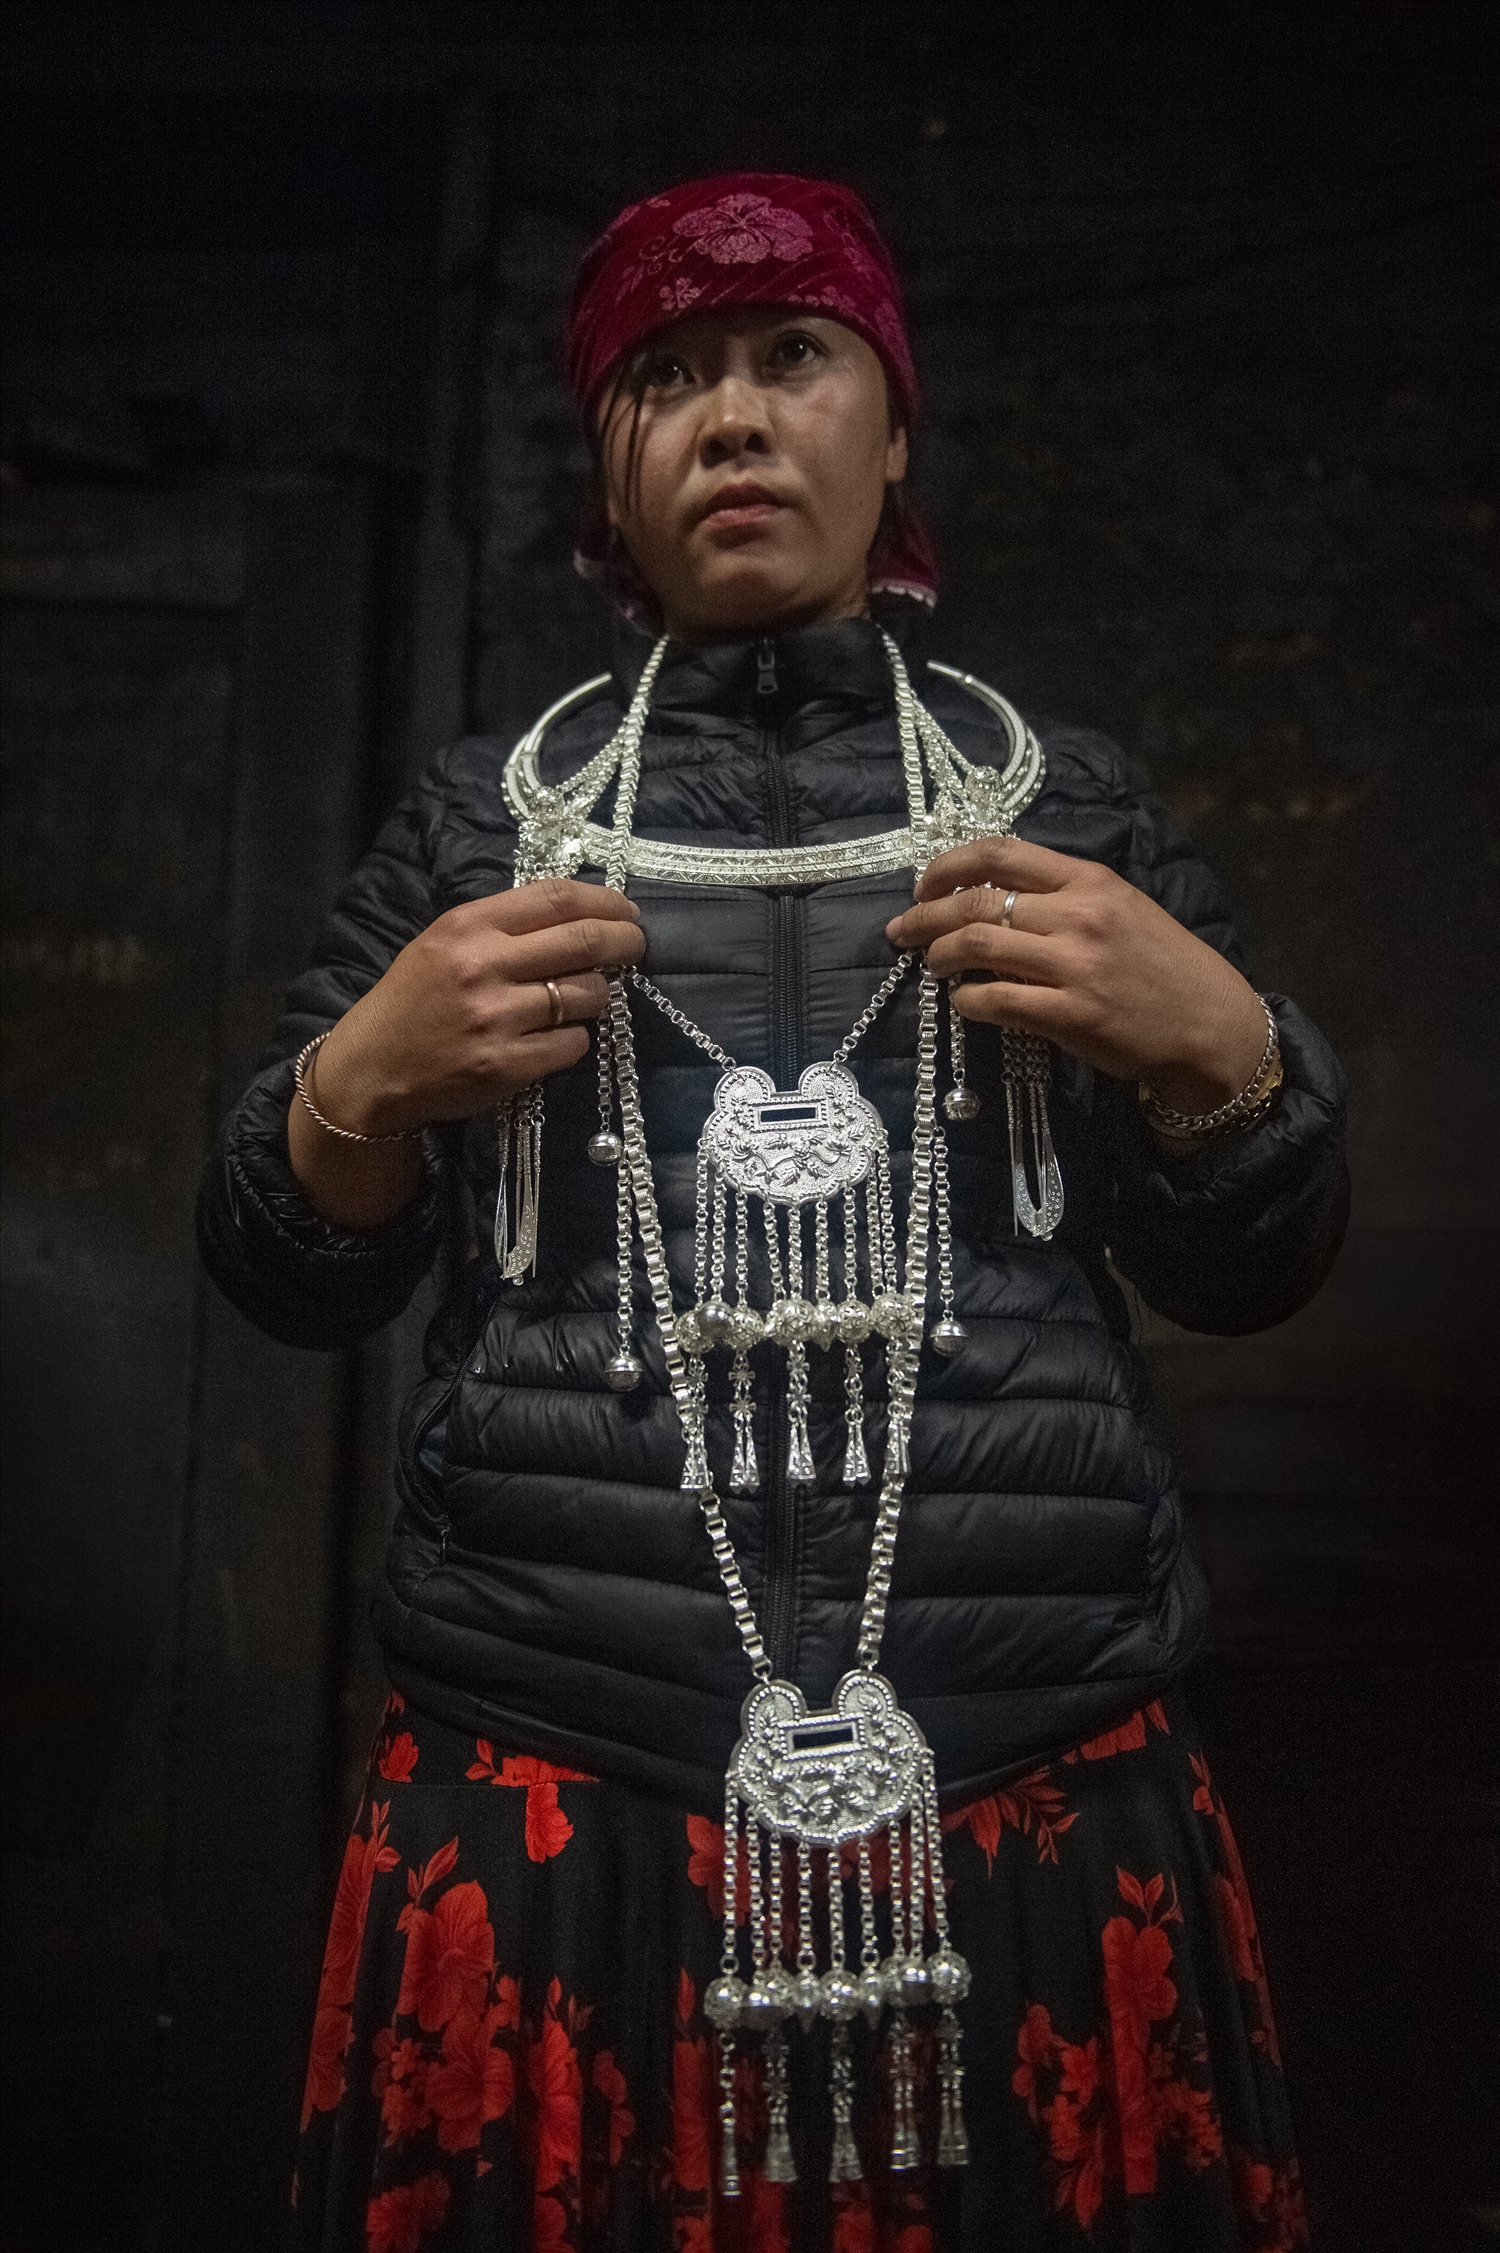 Theo phong tục của người Mông, trang sức bằng bạc được dùng trong các dịp lễ, tết hoặc tặng cho con gái làm của hồi môn khi về nhà chồng